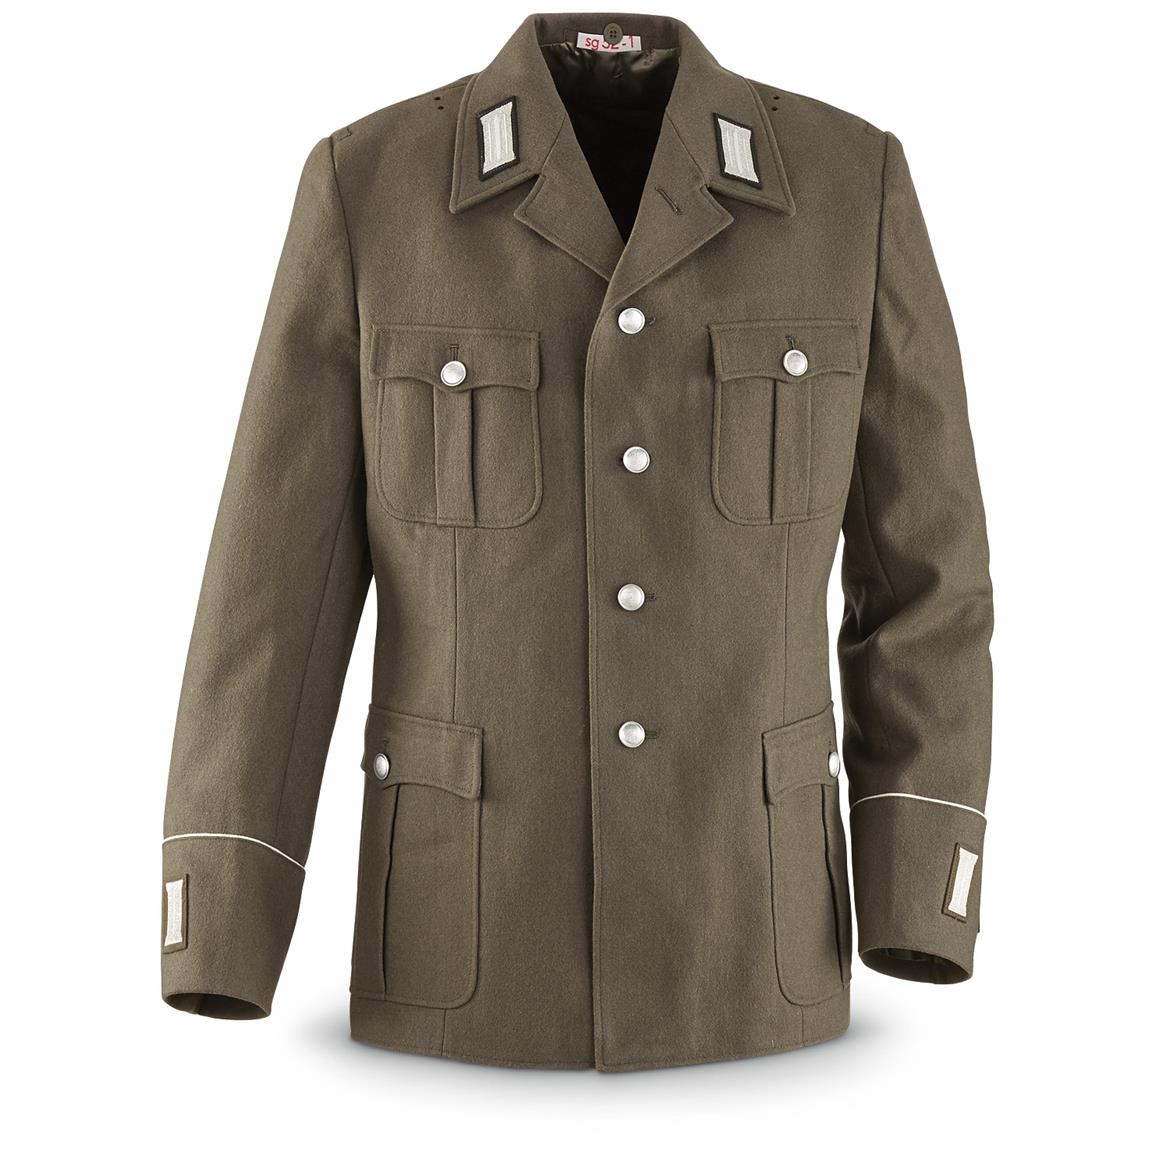 Men's East German Military Surplus Wool Dress Jacket, Used - 652694 ...